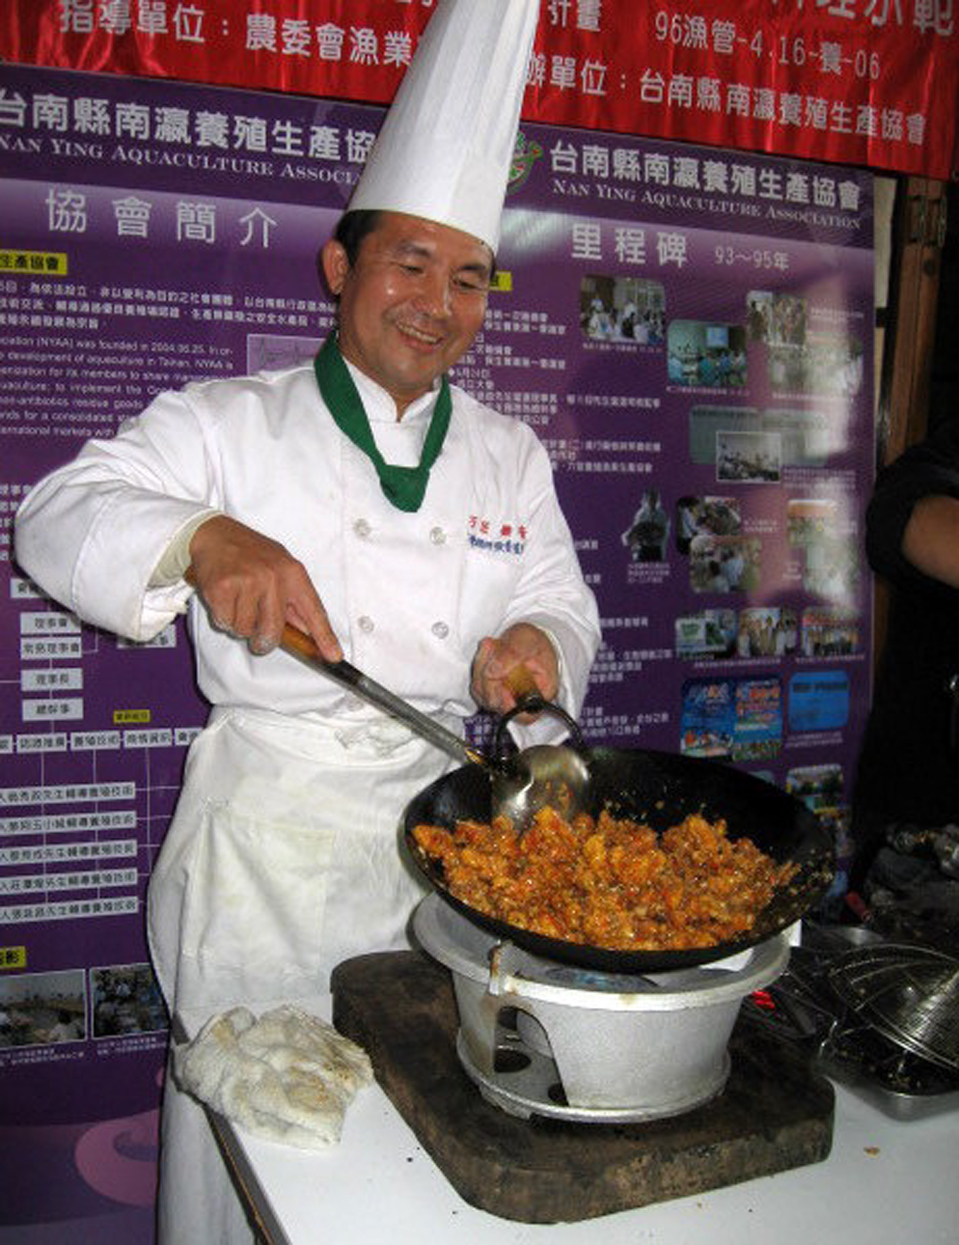 台湾鲷料理达人李宗铭可以一手料理200多道的台湾鲷精致佳肴。